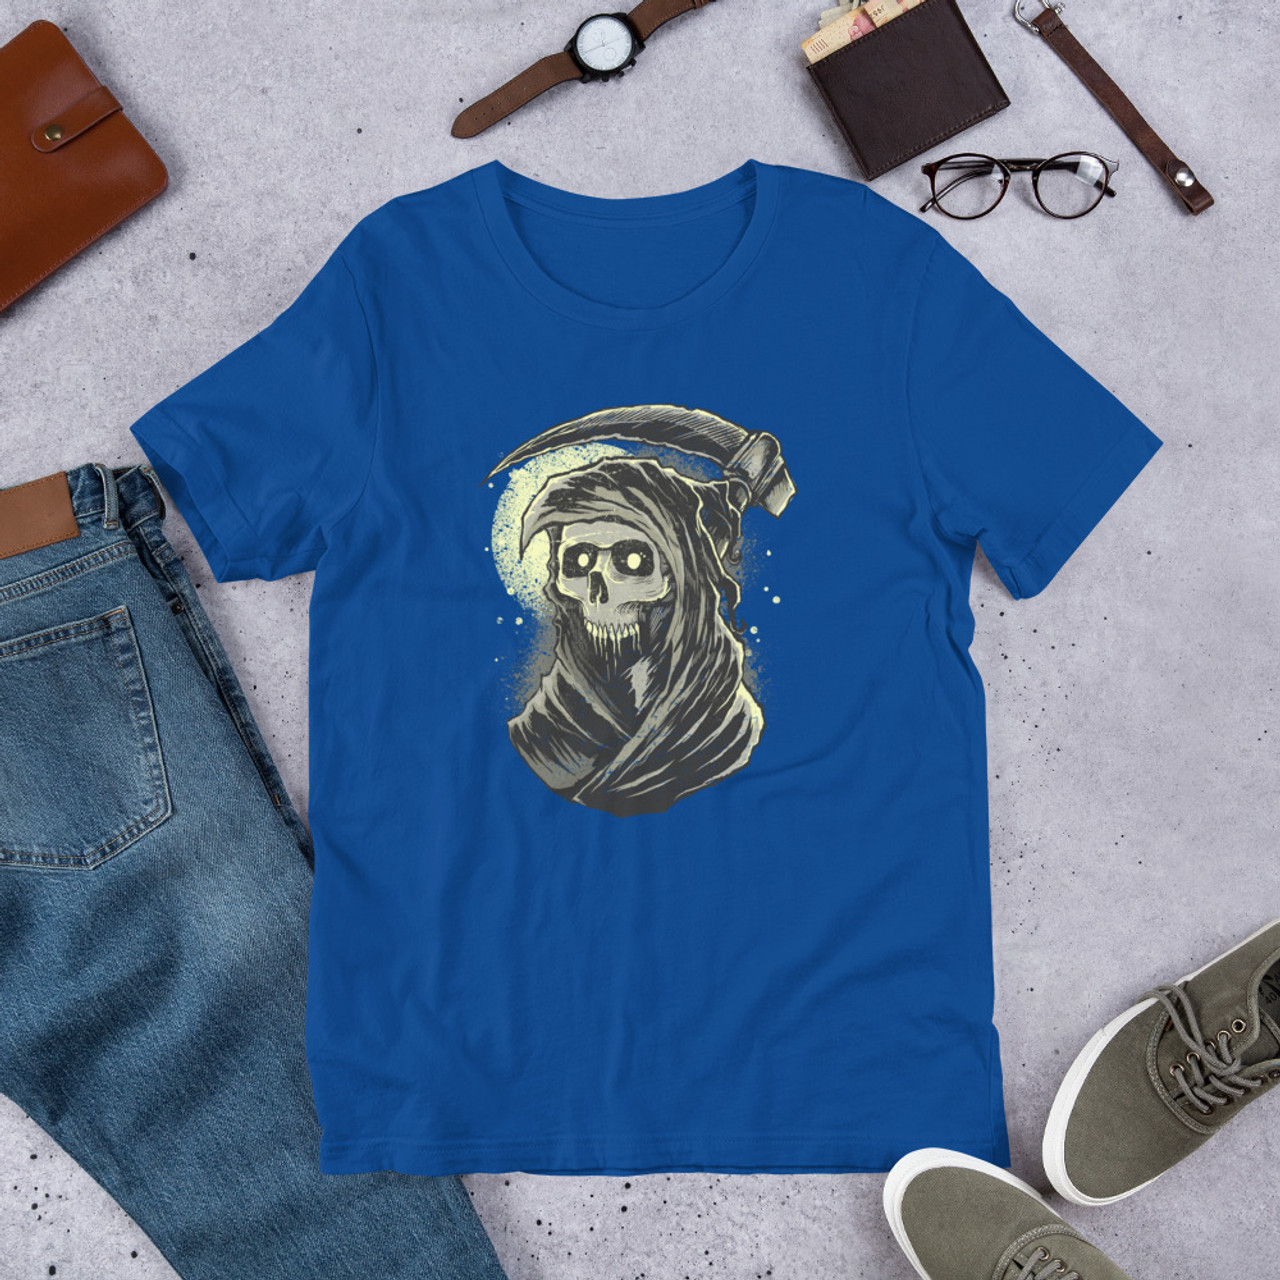 True Royal T-Shirt - Bella + Canvas 3001 Grim Reaper